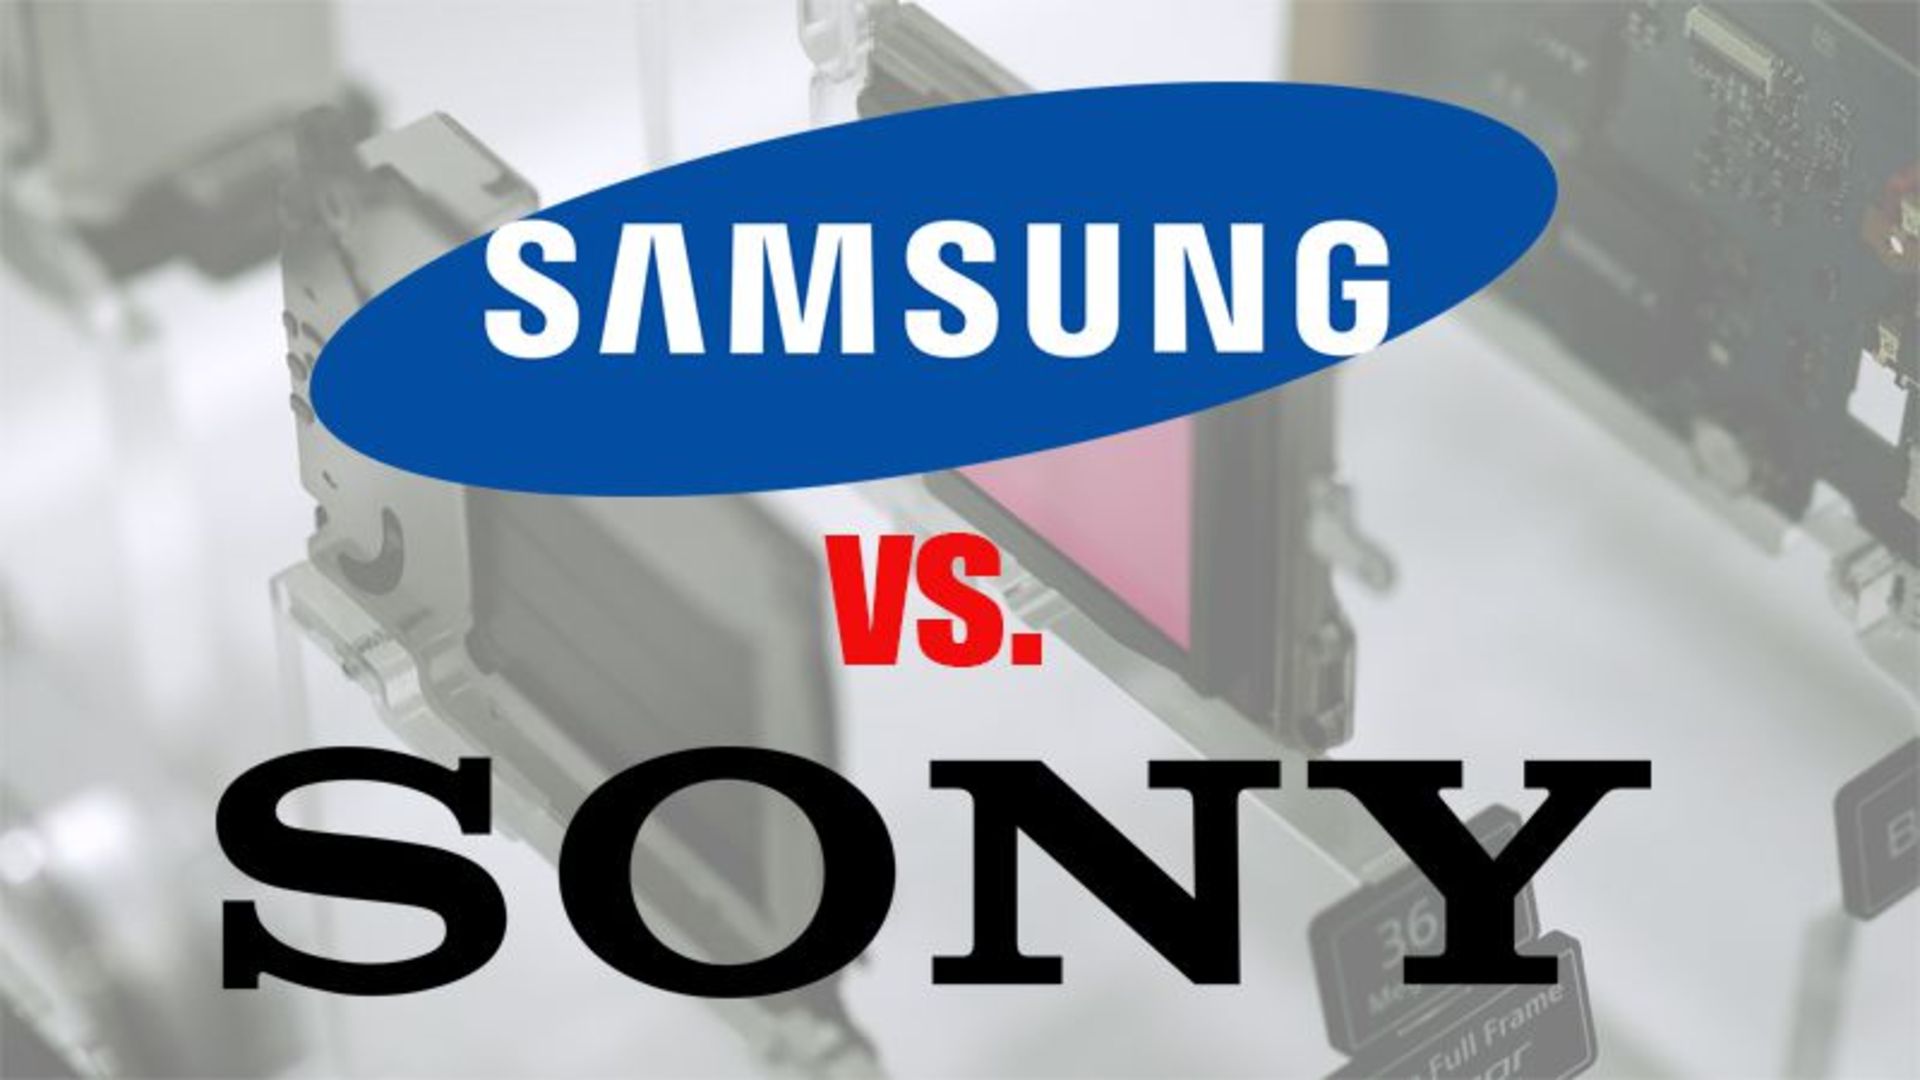 مرجع متخصصين ايران لوگوي سامسونگ و سوني / Samsung  VS Sony